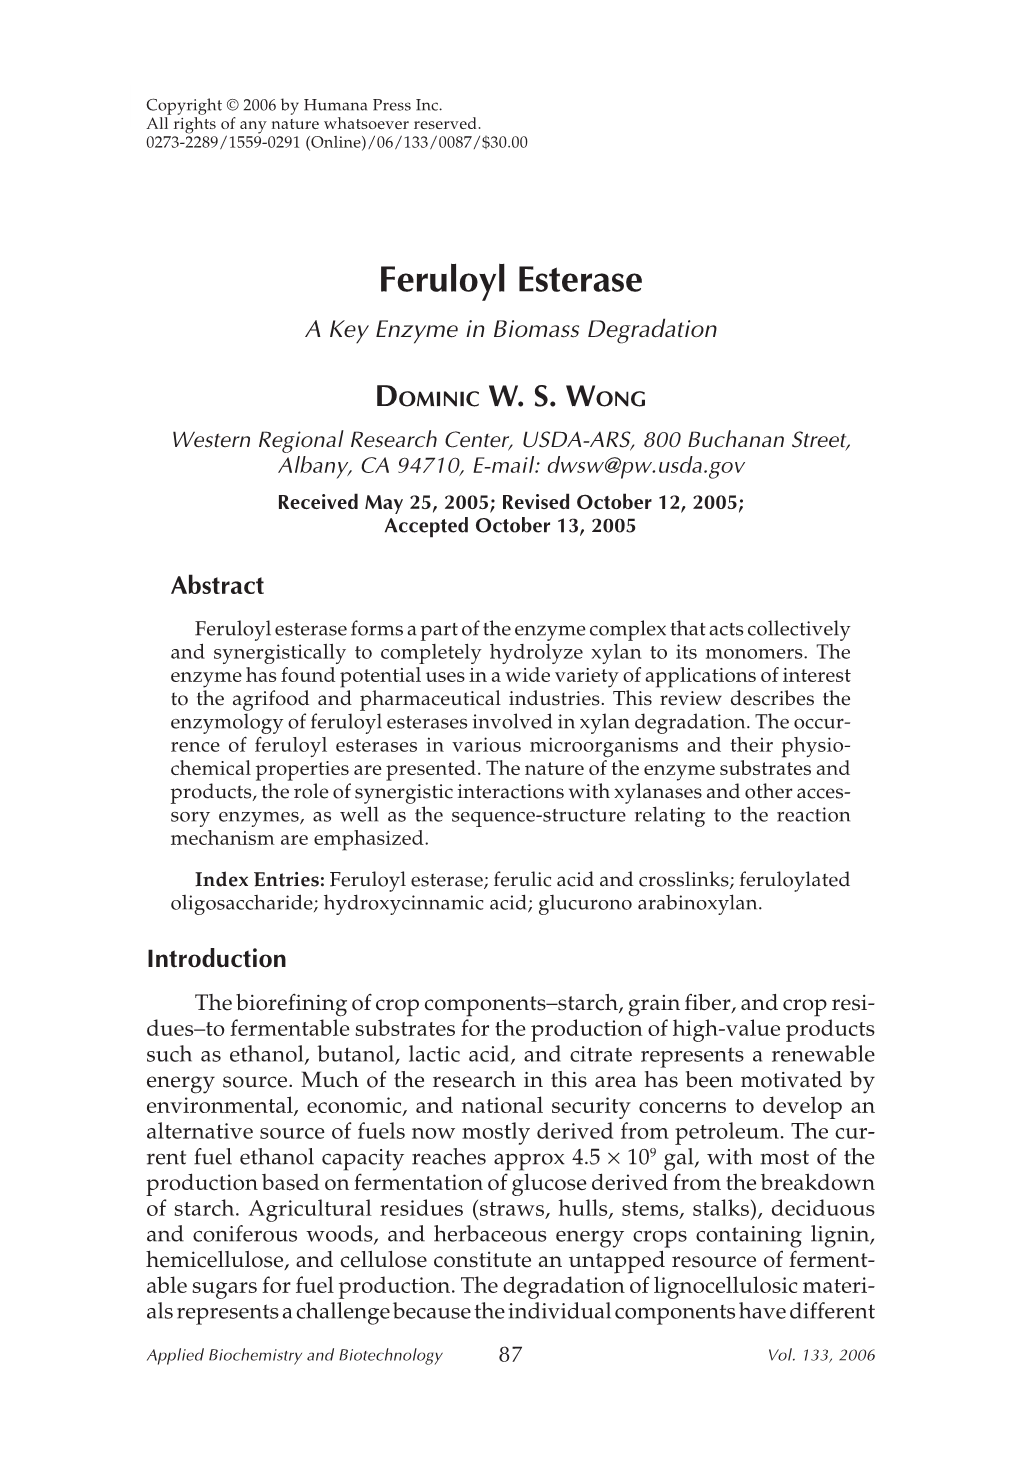 Feruloyl Esterase a Key Enzyme in Biomass Degradation